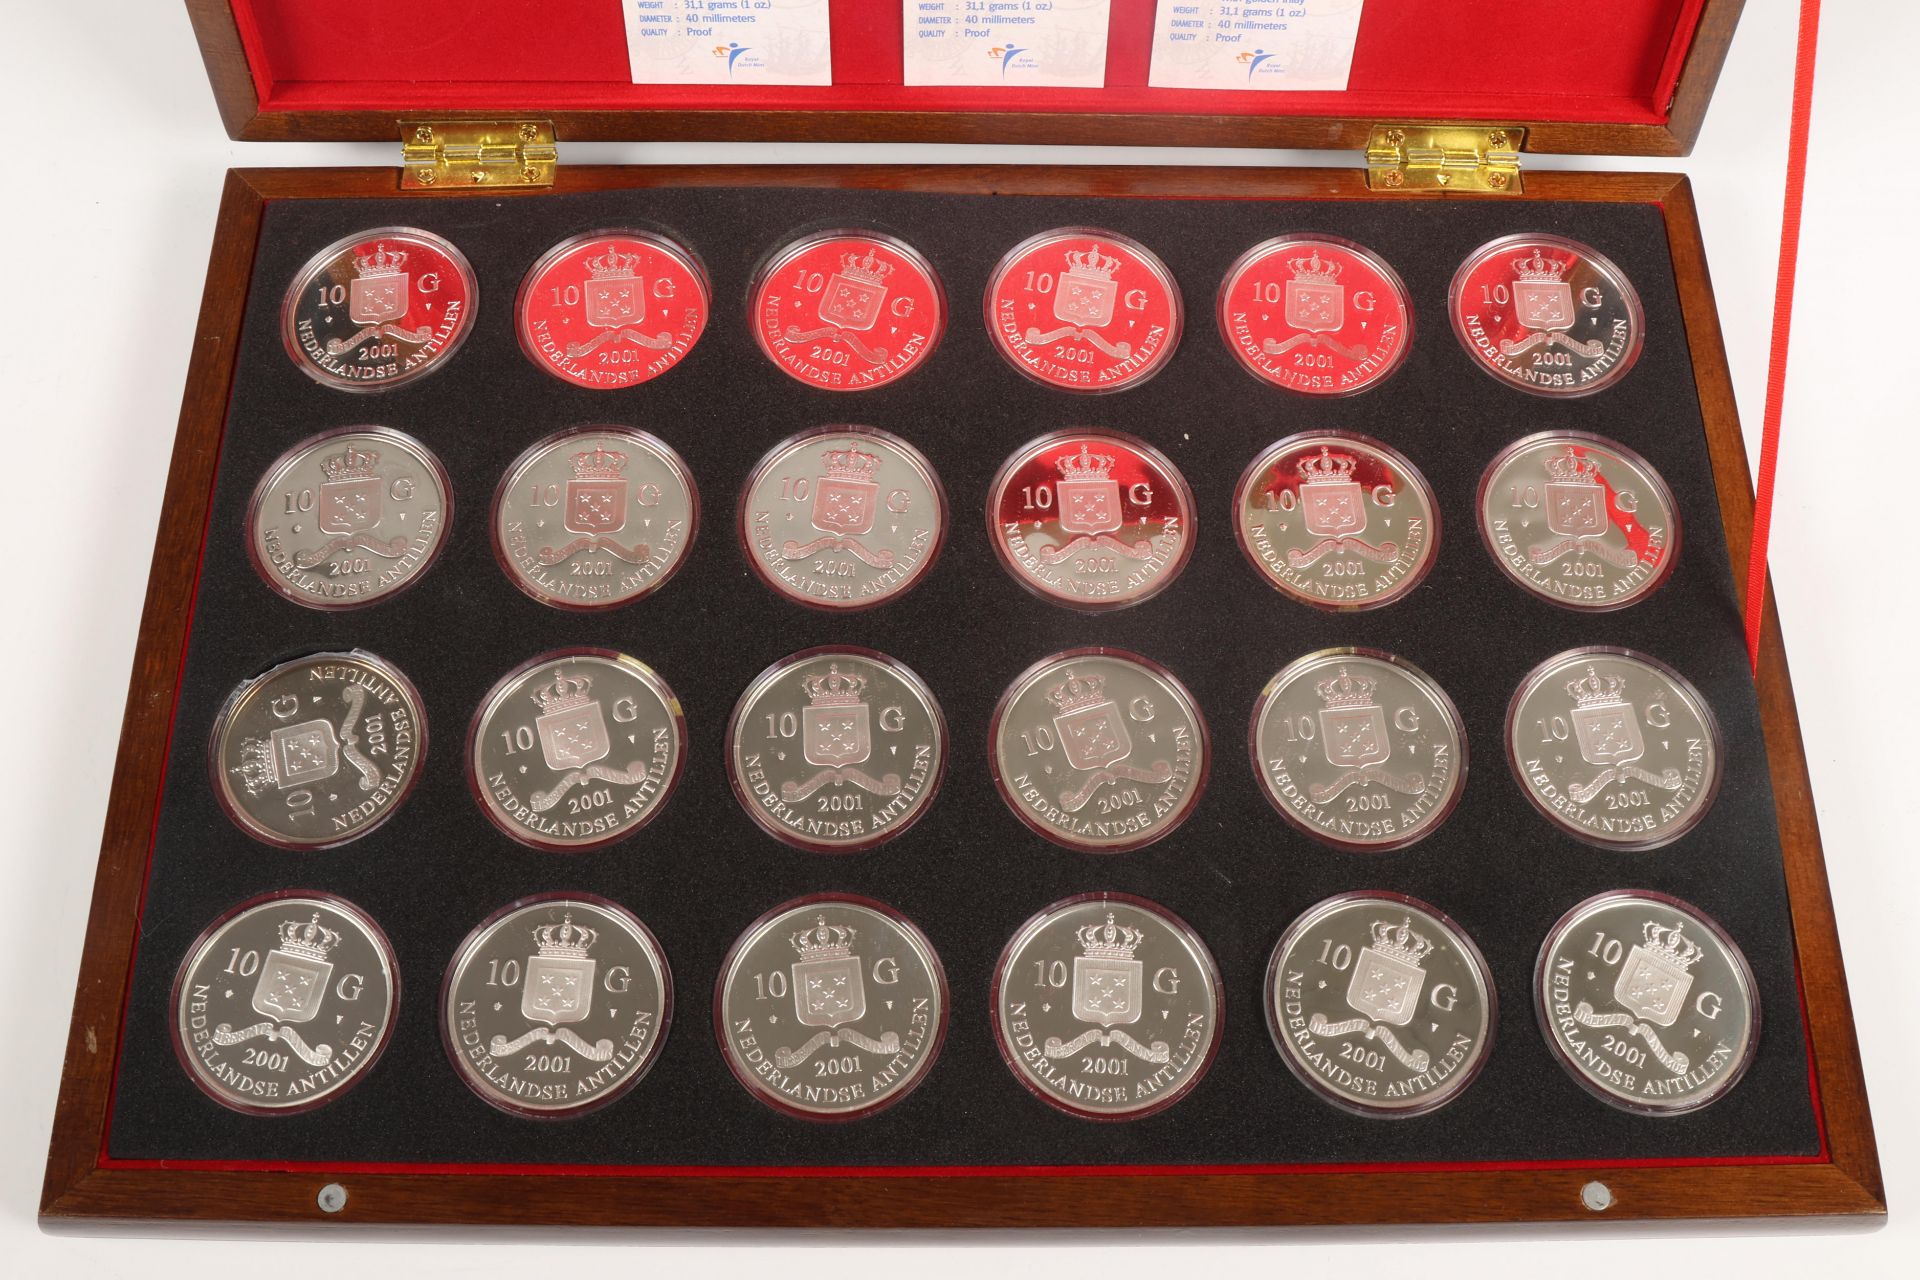 Collectie van vierentwintig tien gulden munten, Nederlandse Antillen, 2001.